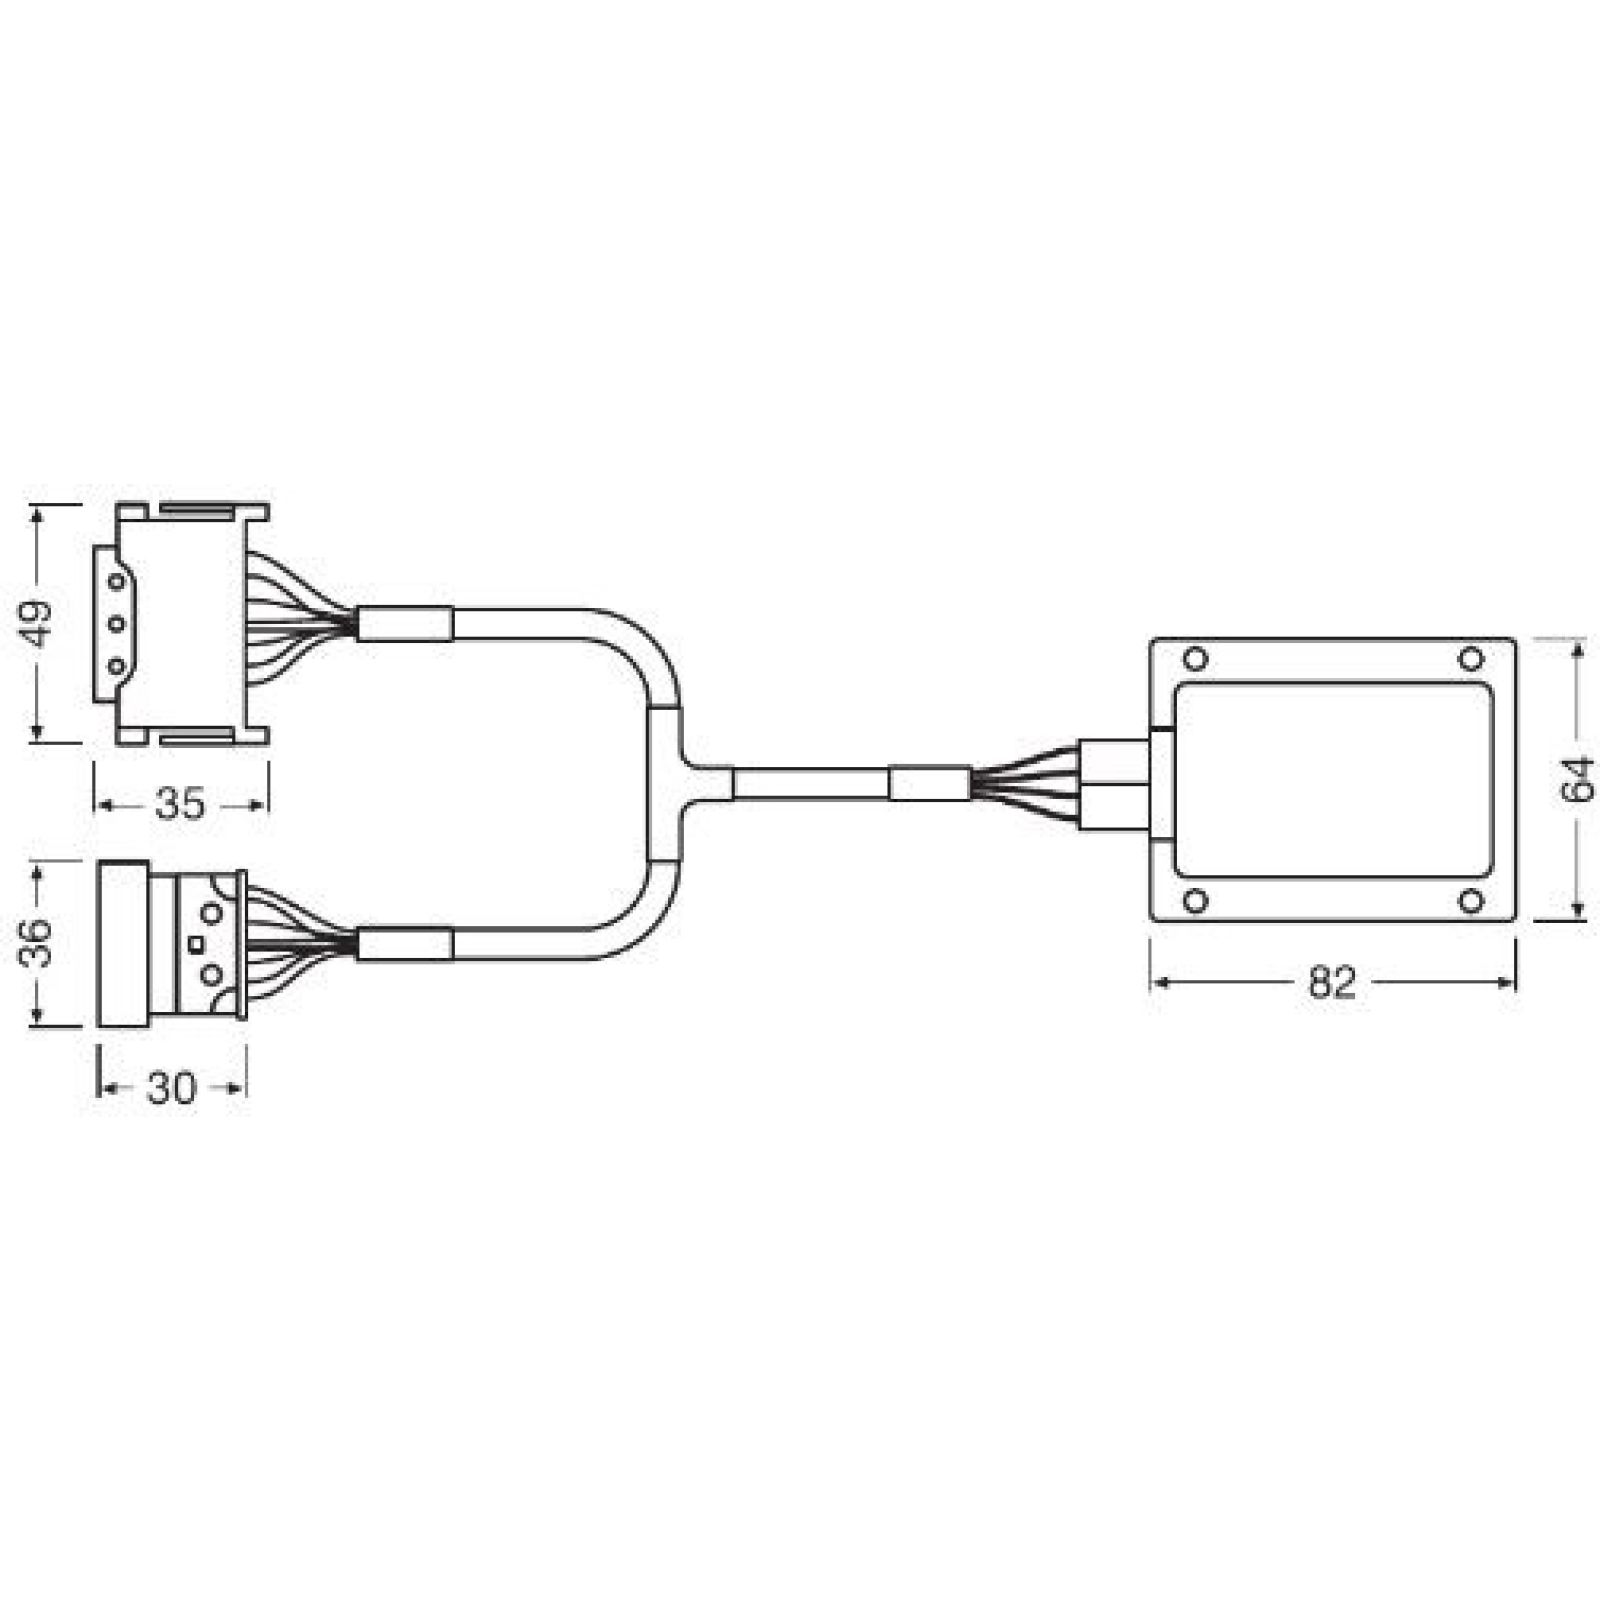 LEDriving SMART CANBUS LEDSC03-1